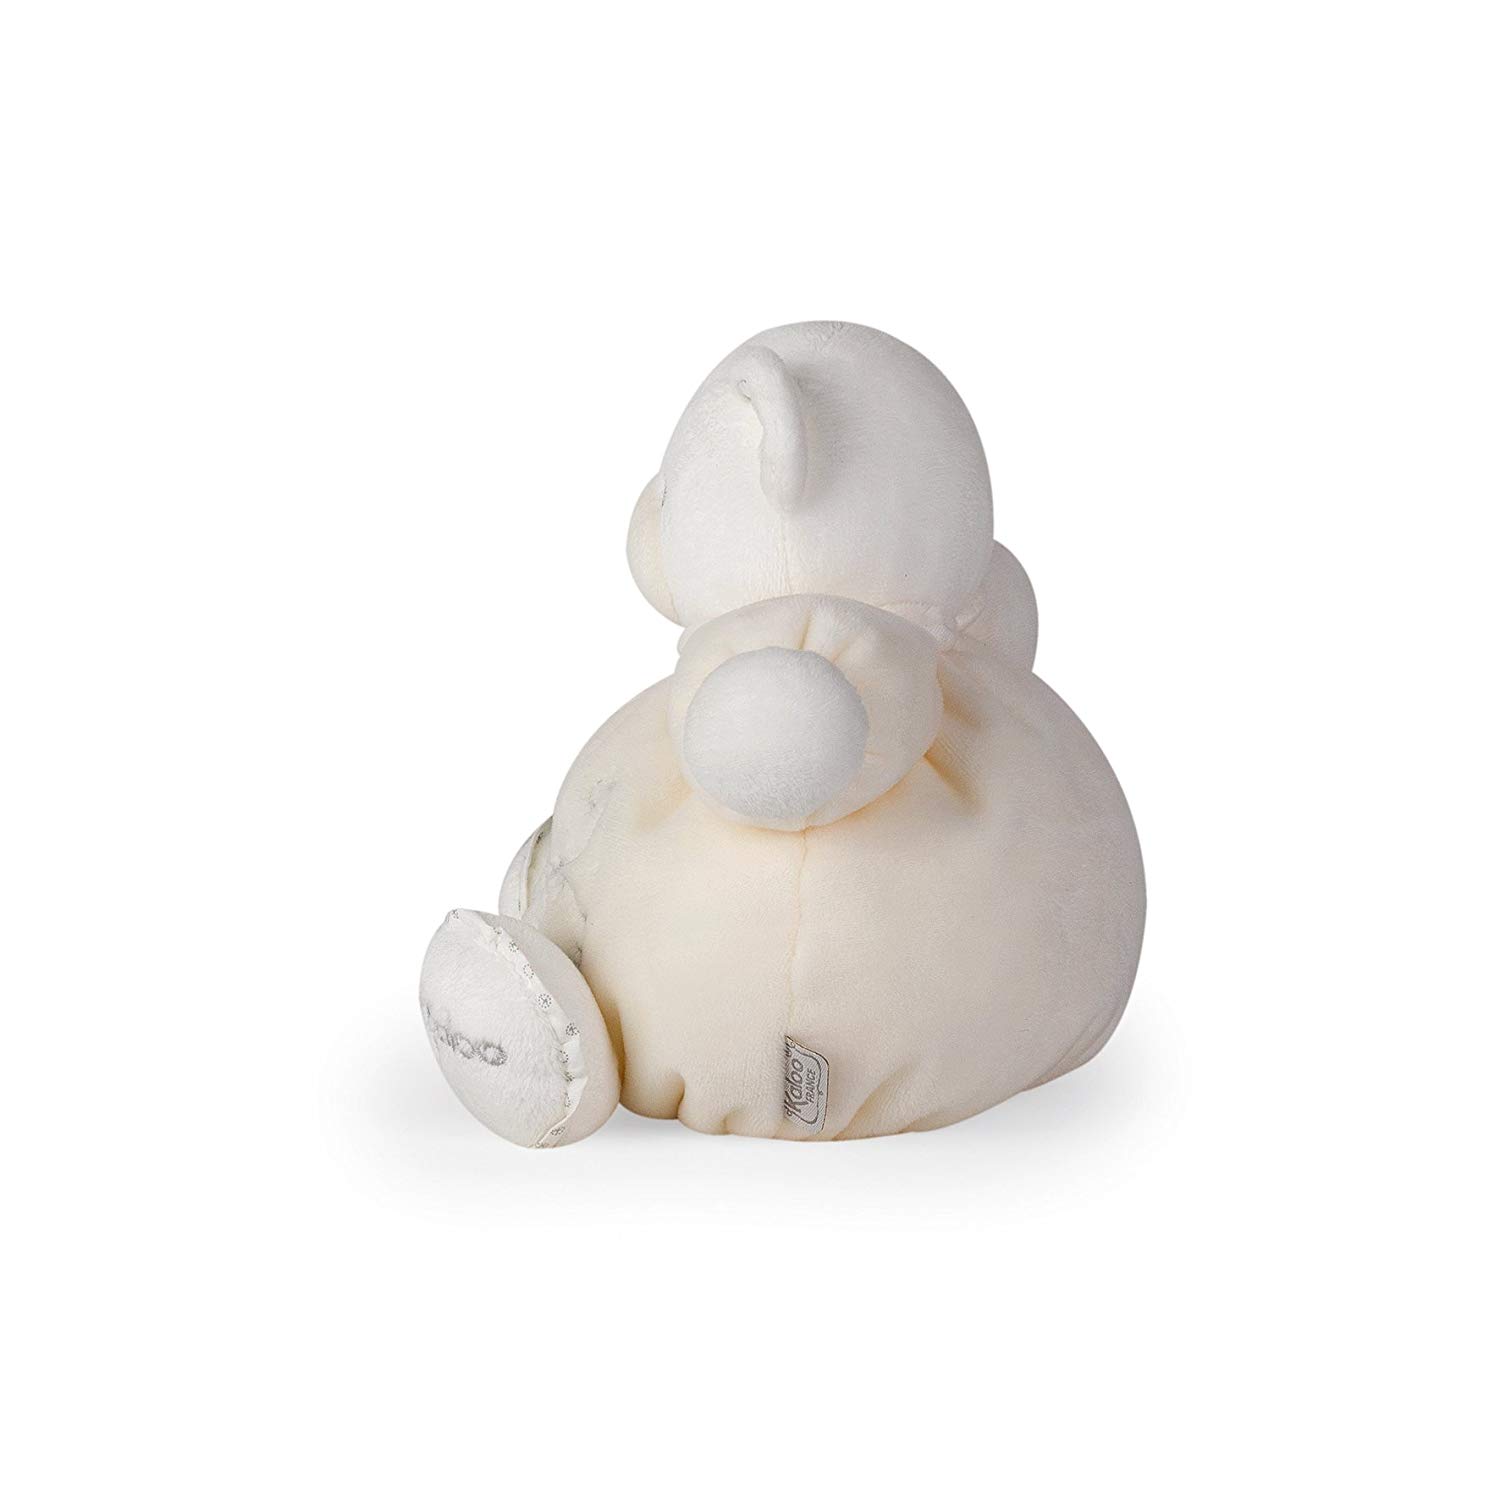 Мягкая игрушка из серии Жемчуг - Мишка маленький, кремовый, 18 см.  